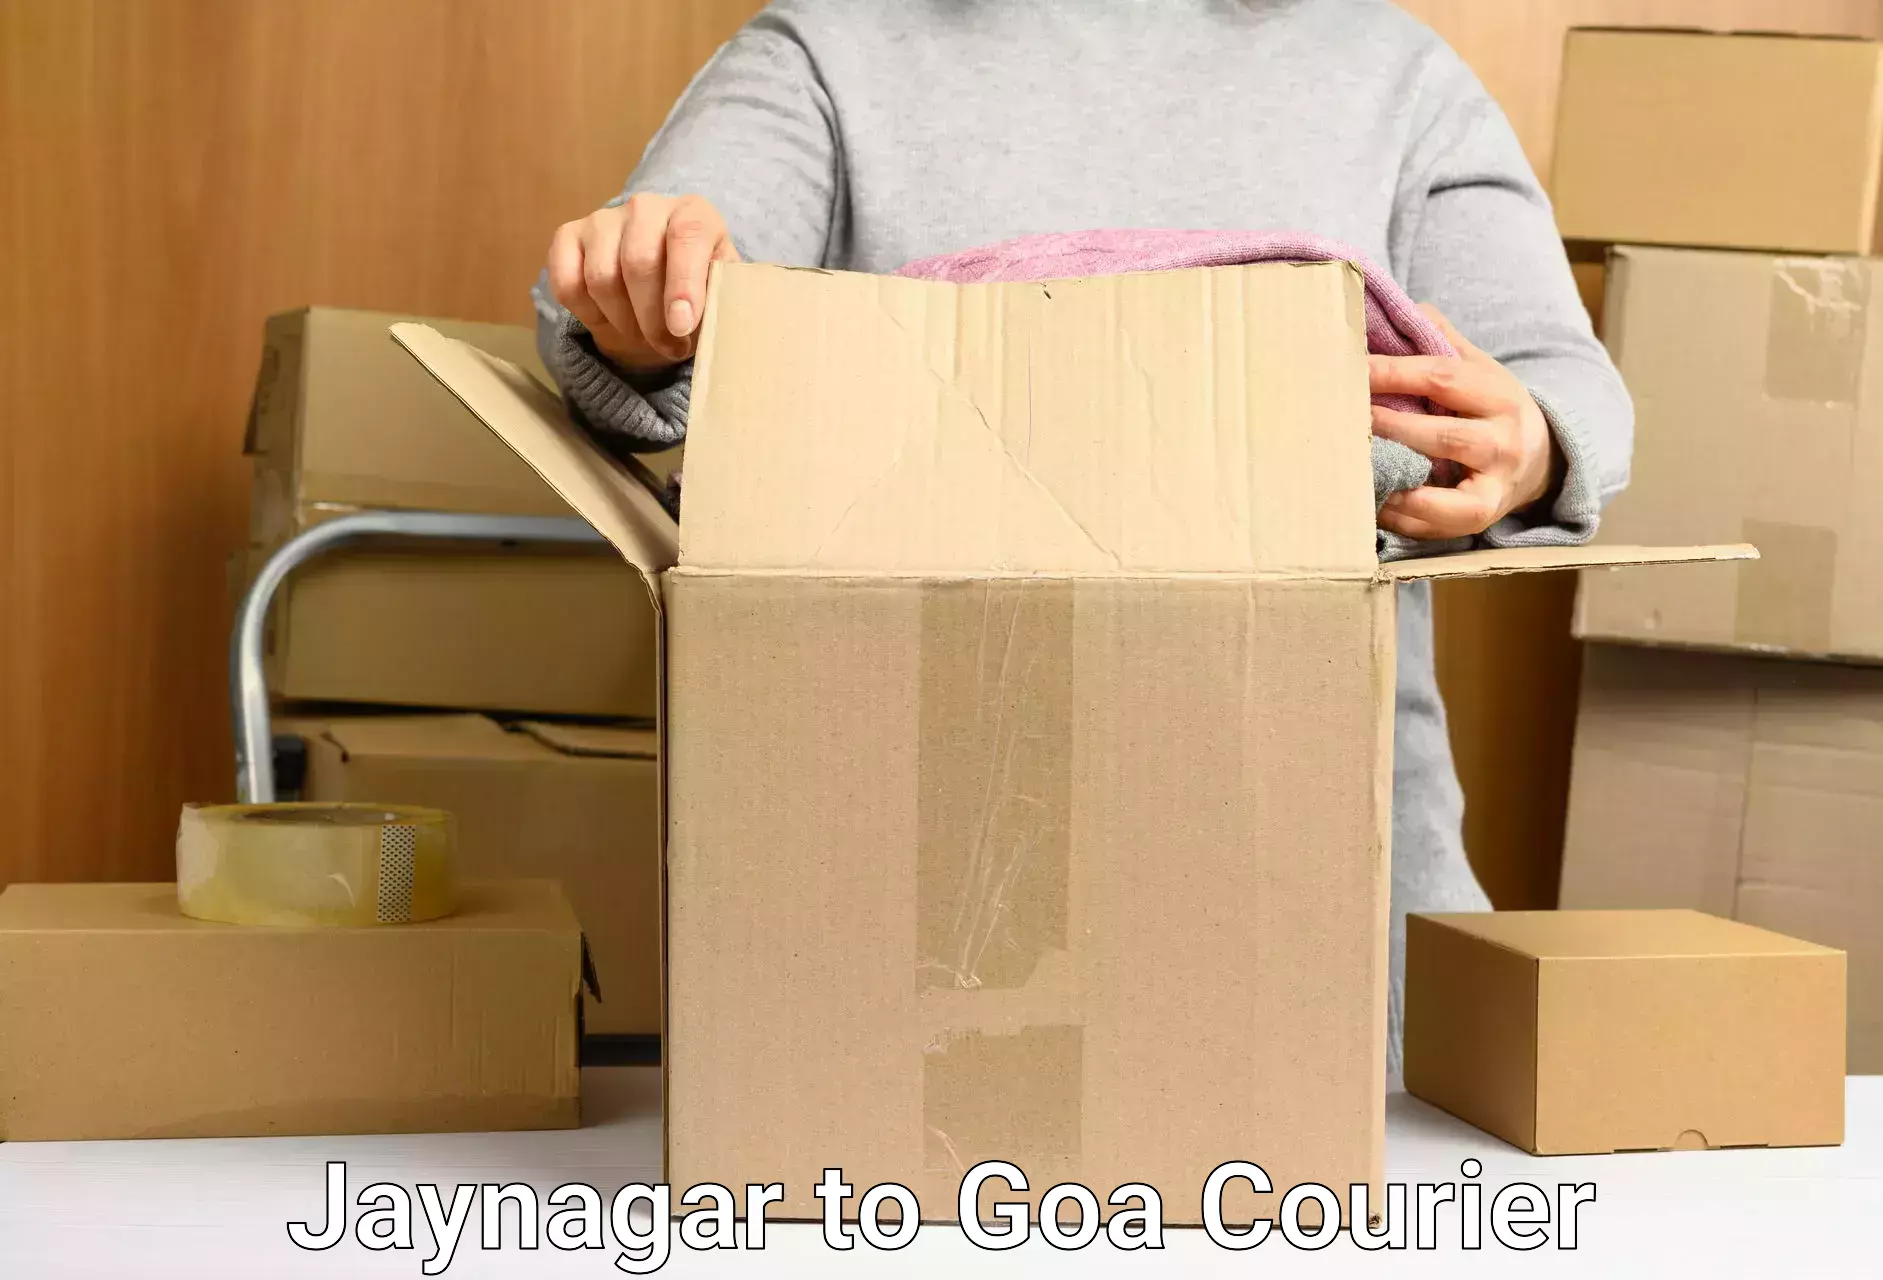 Supply chain efficiency Jaynagar to IIT Goa